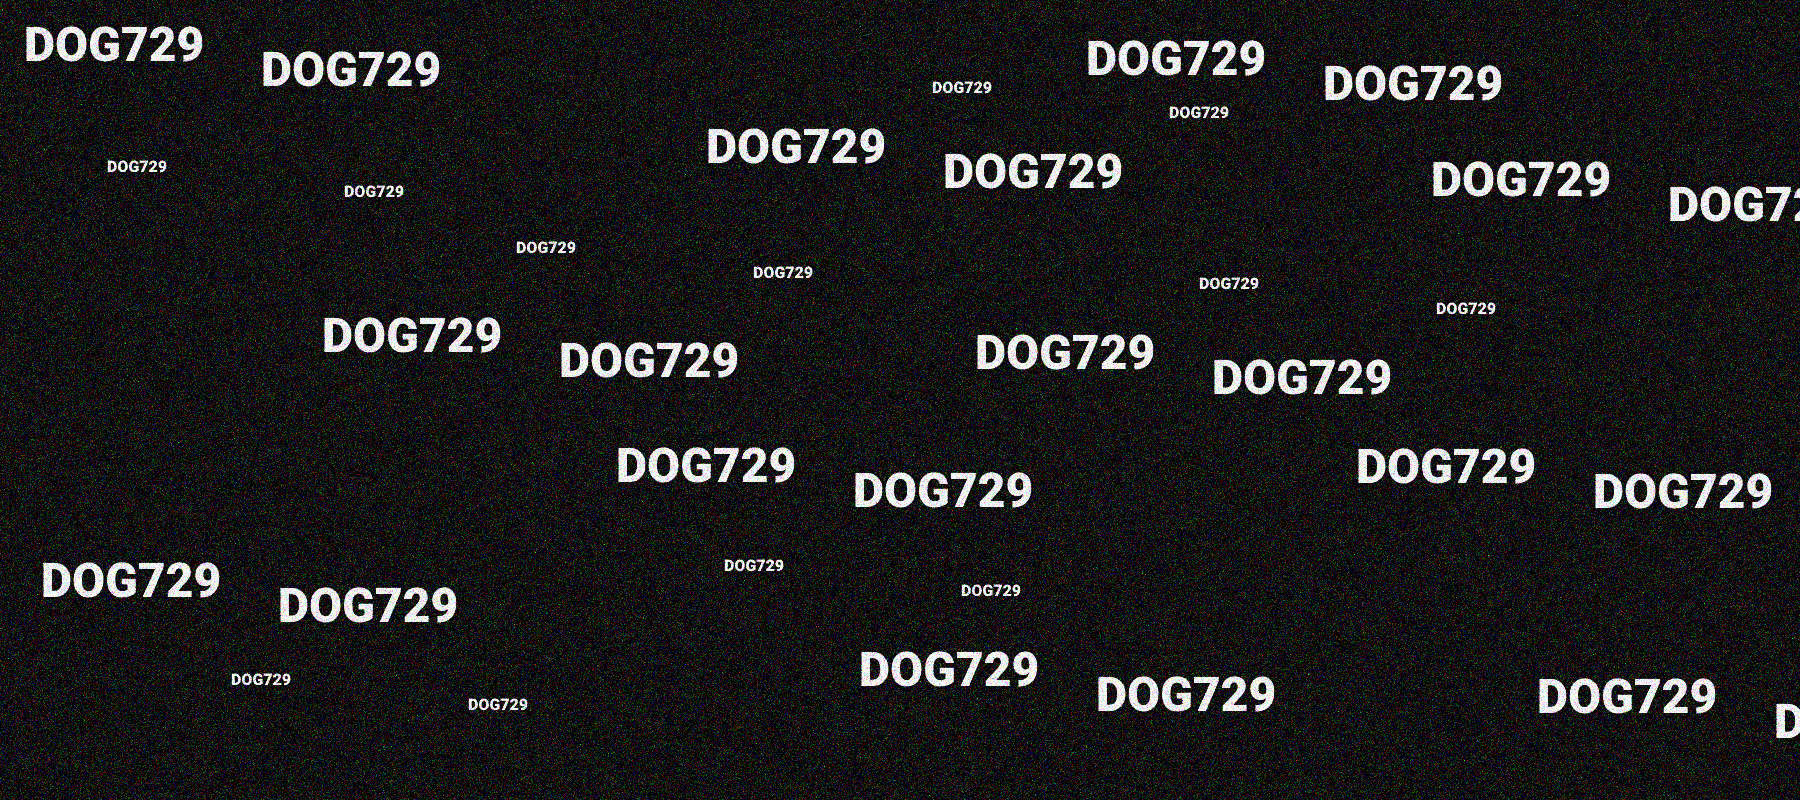 DOG729 横幅